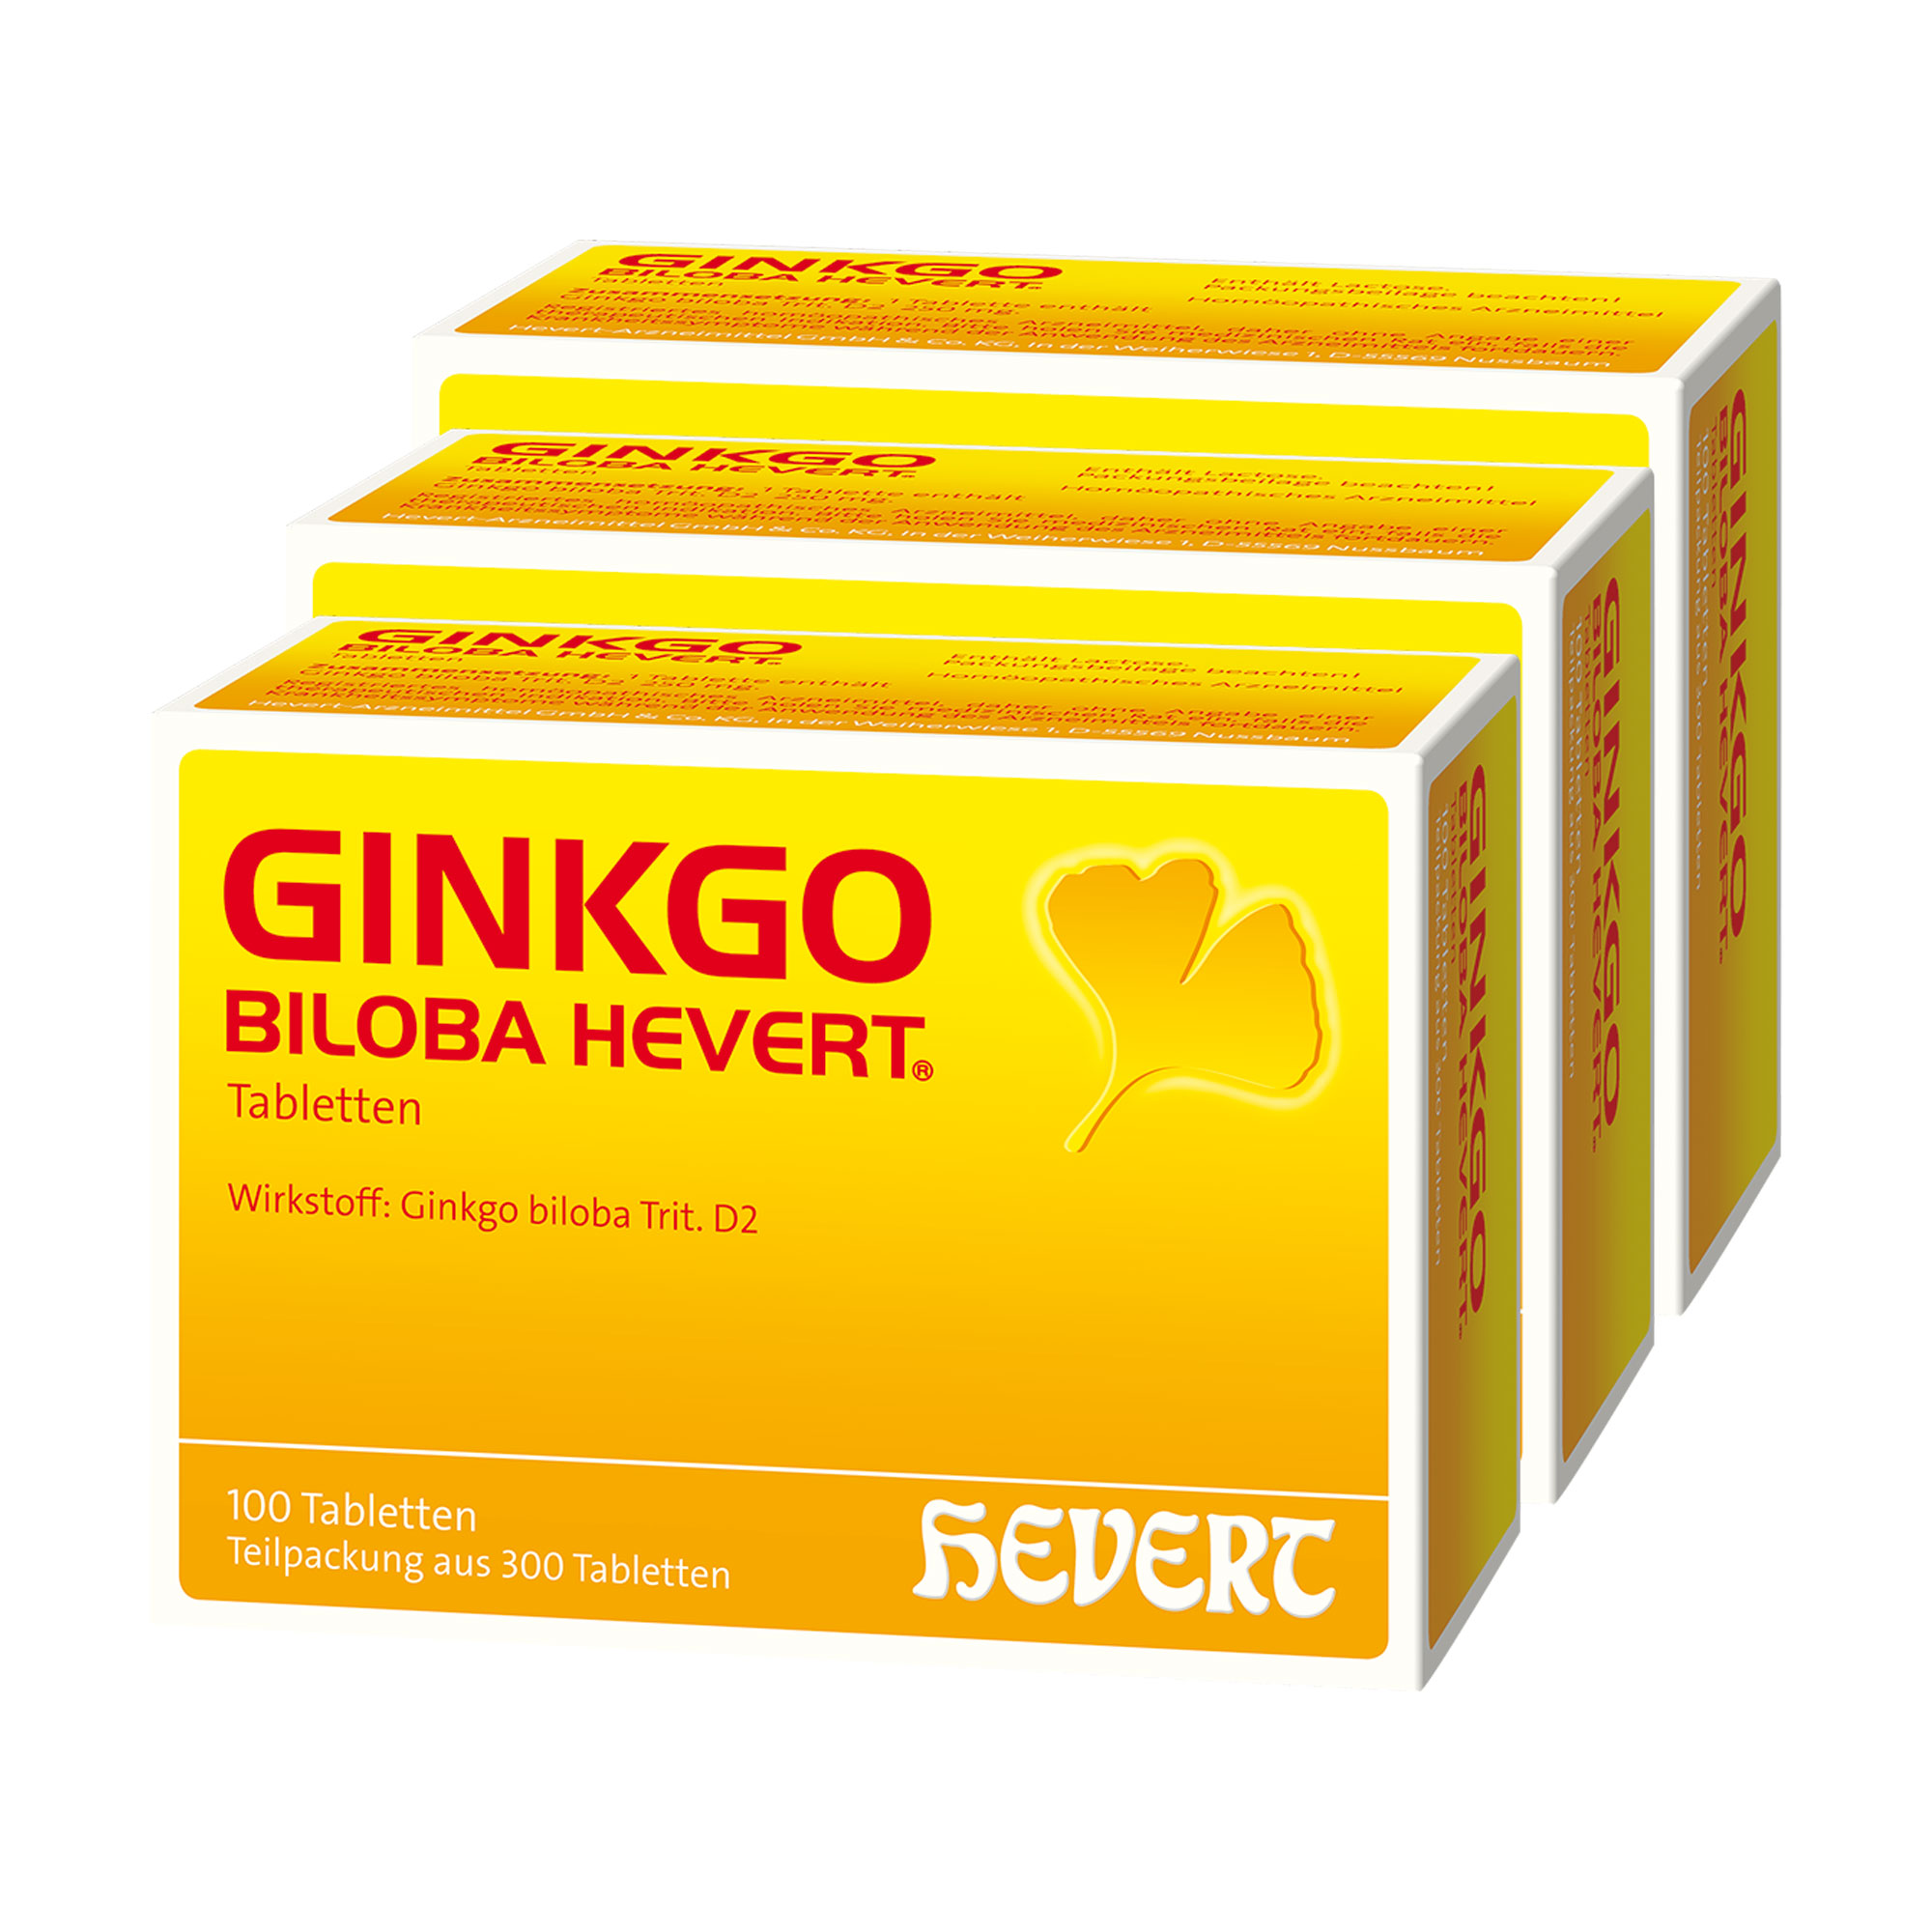 Homöopathisches Arzneimittel mit Ginkgo biloba Trit. D2.